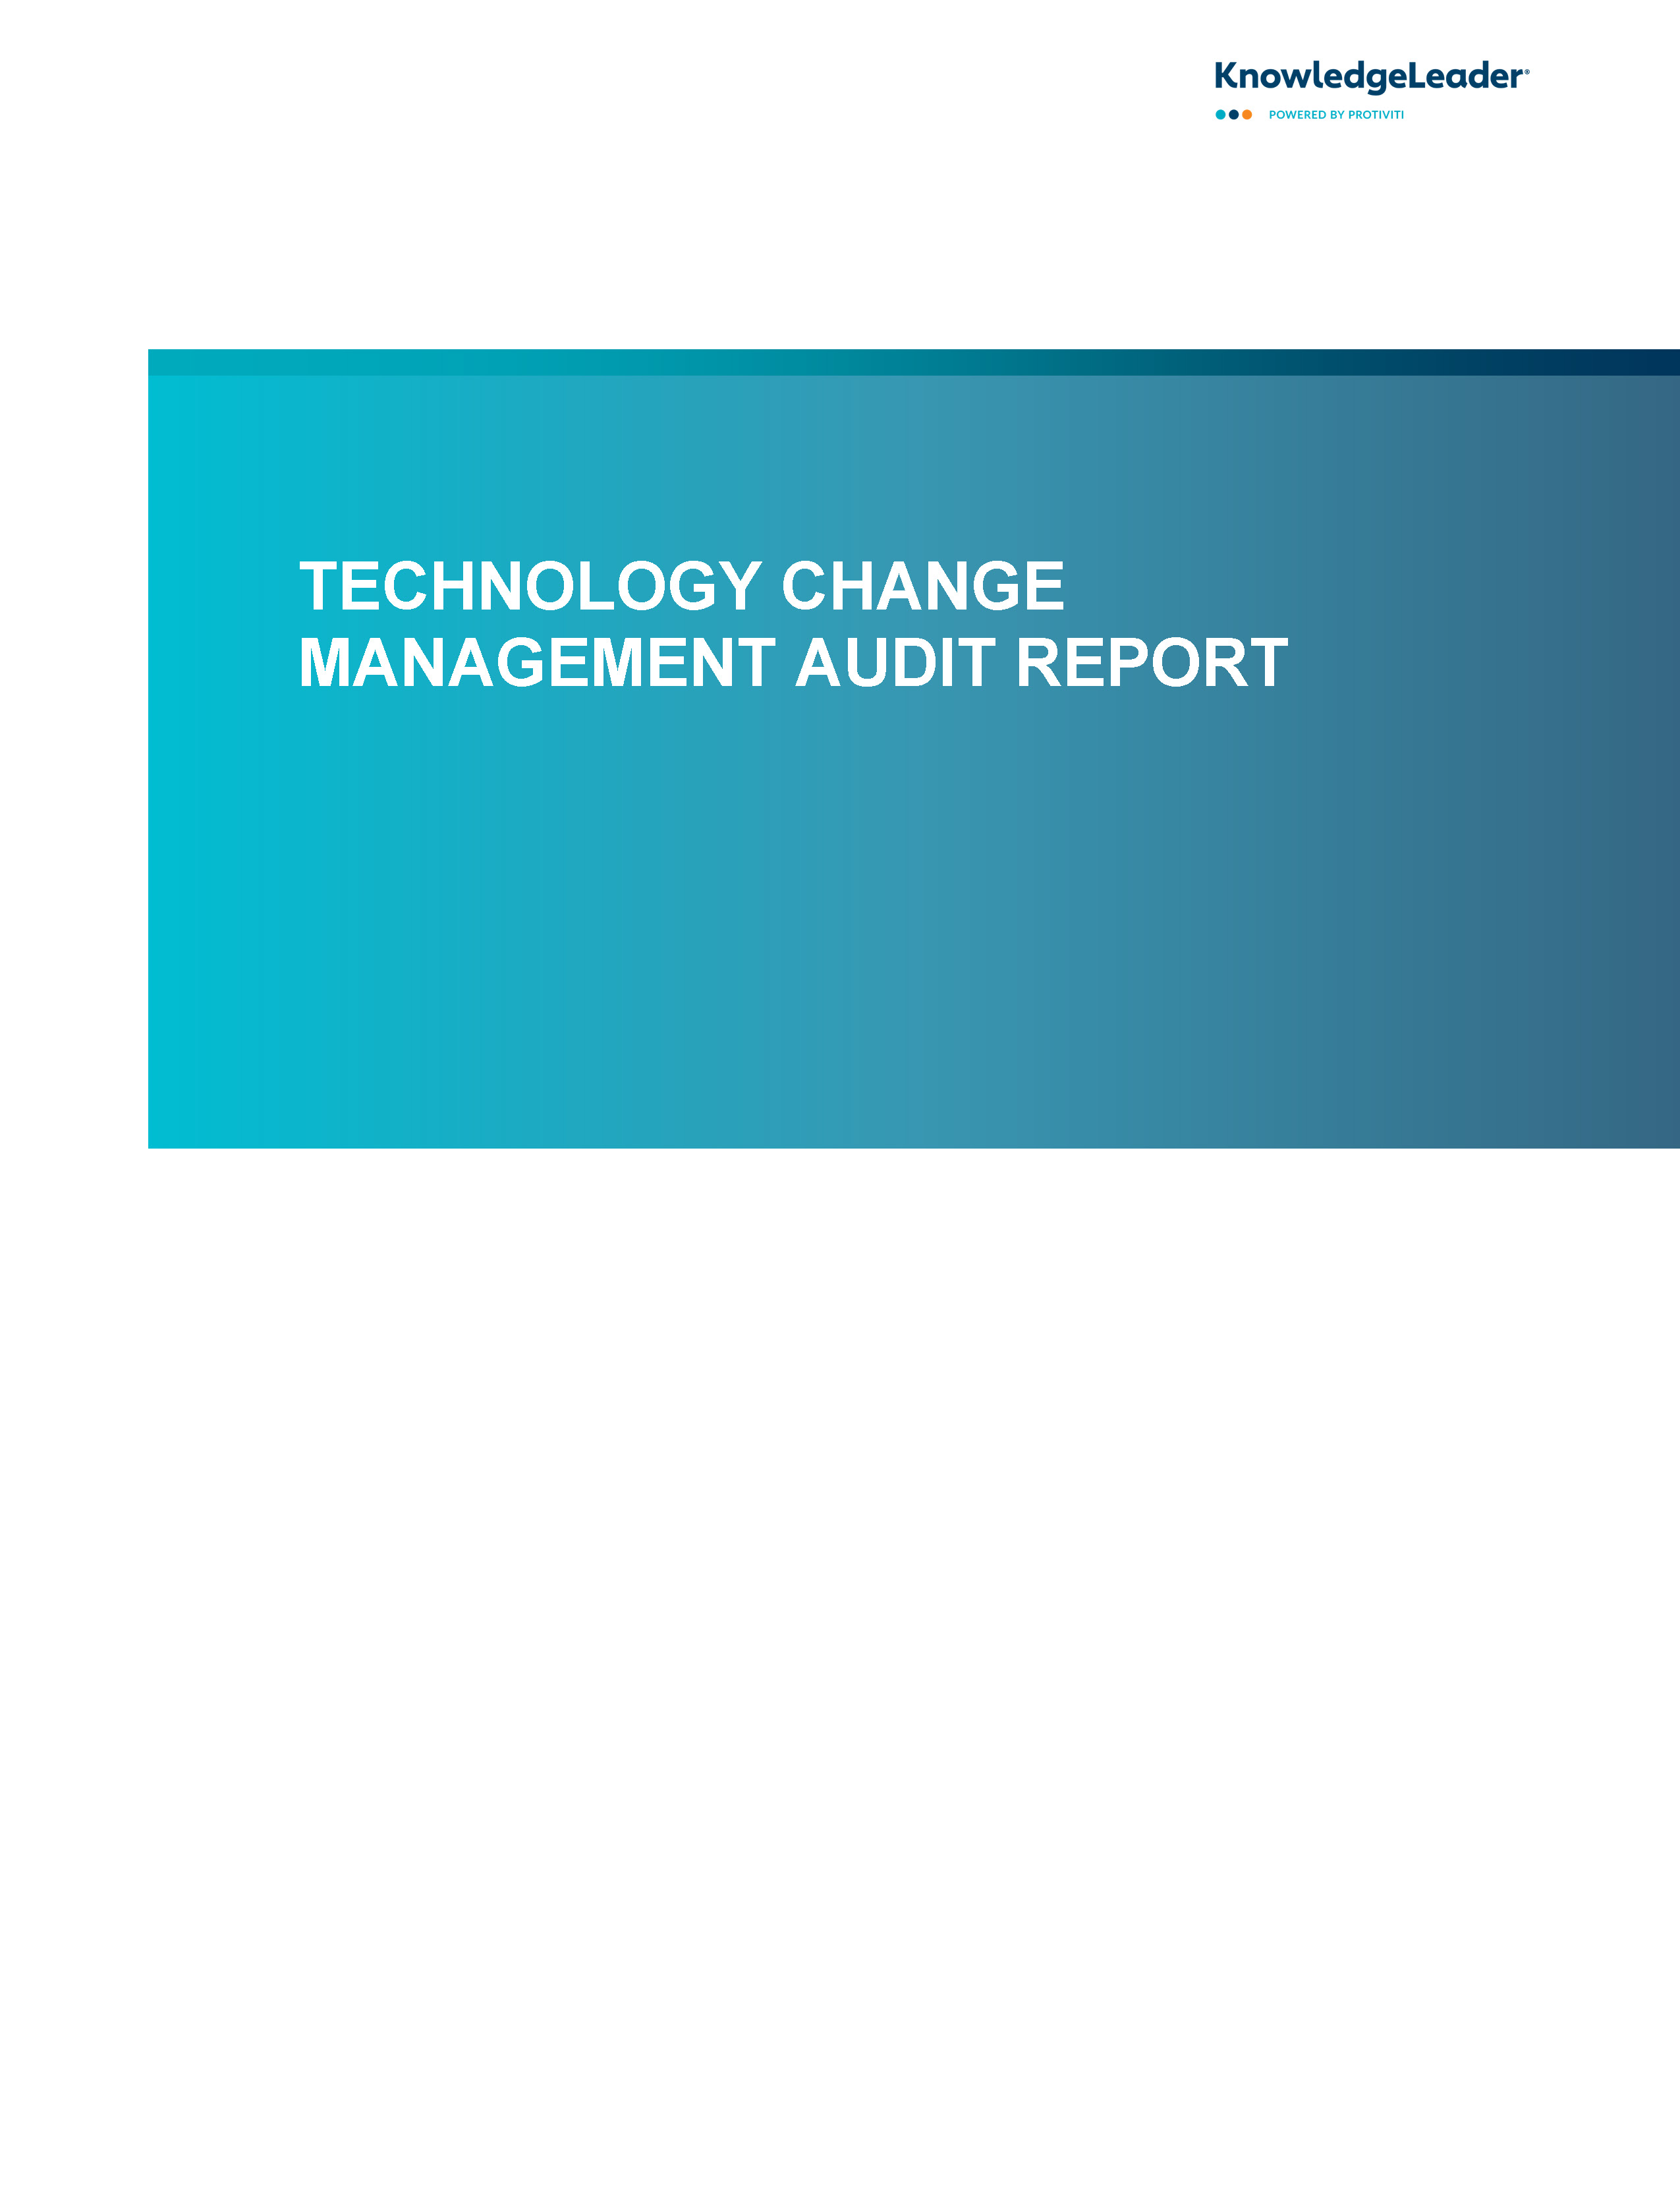 Technology Change Management Audit Report